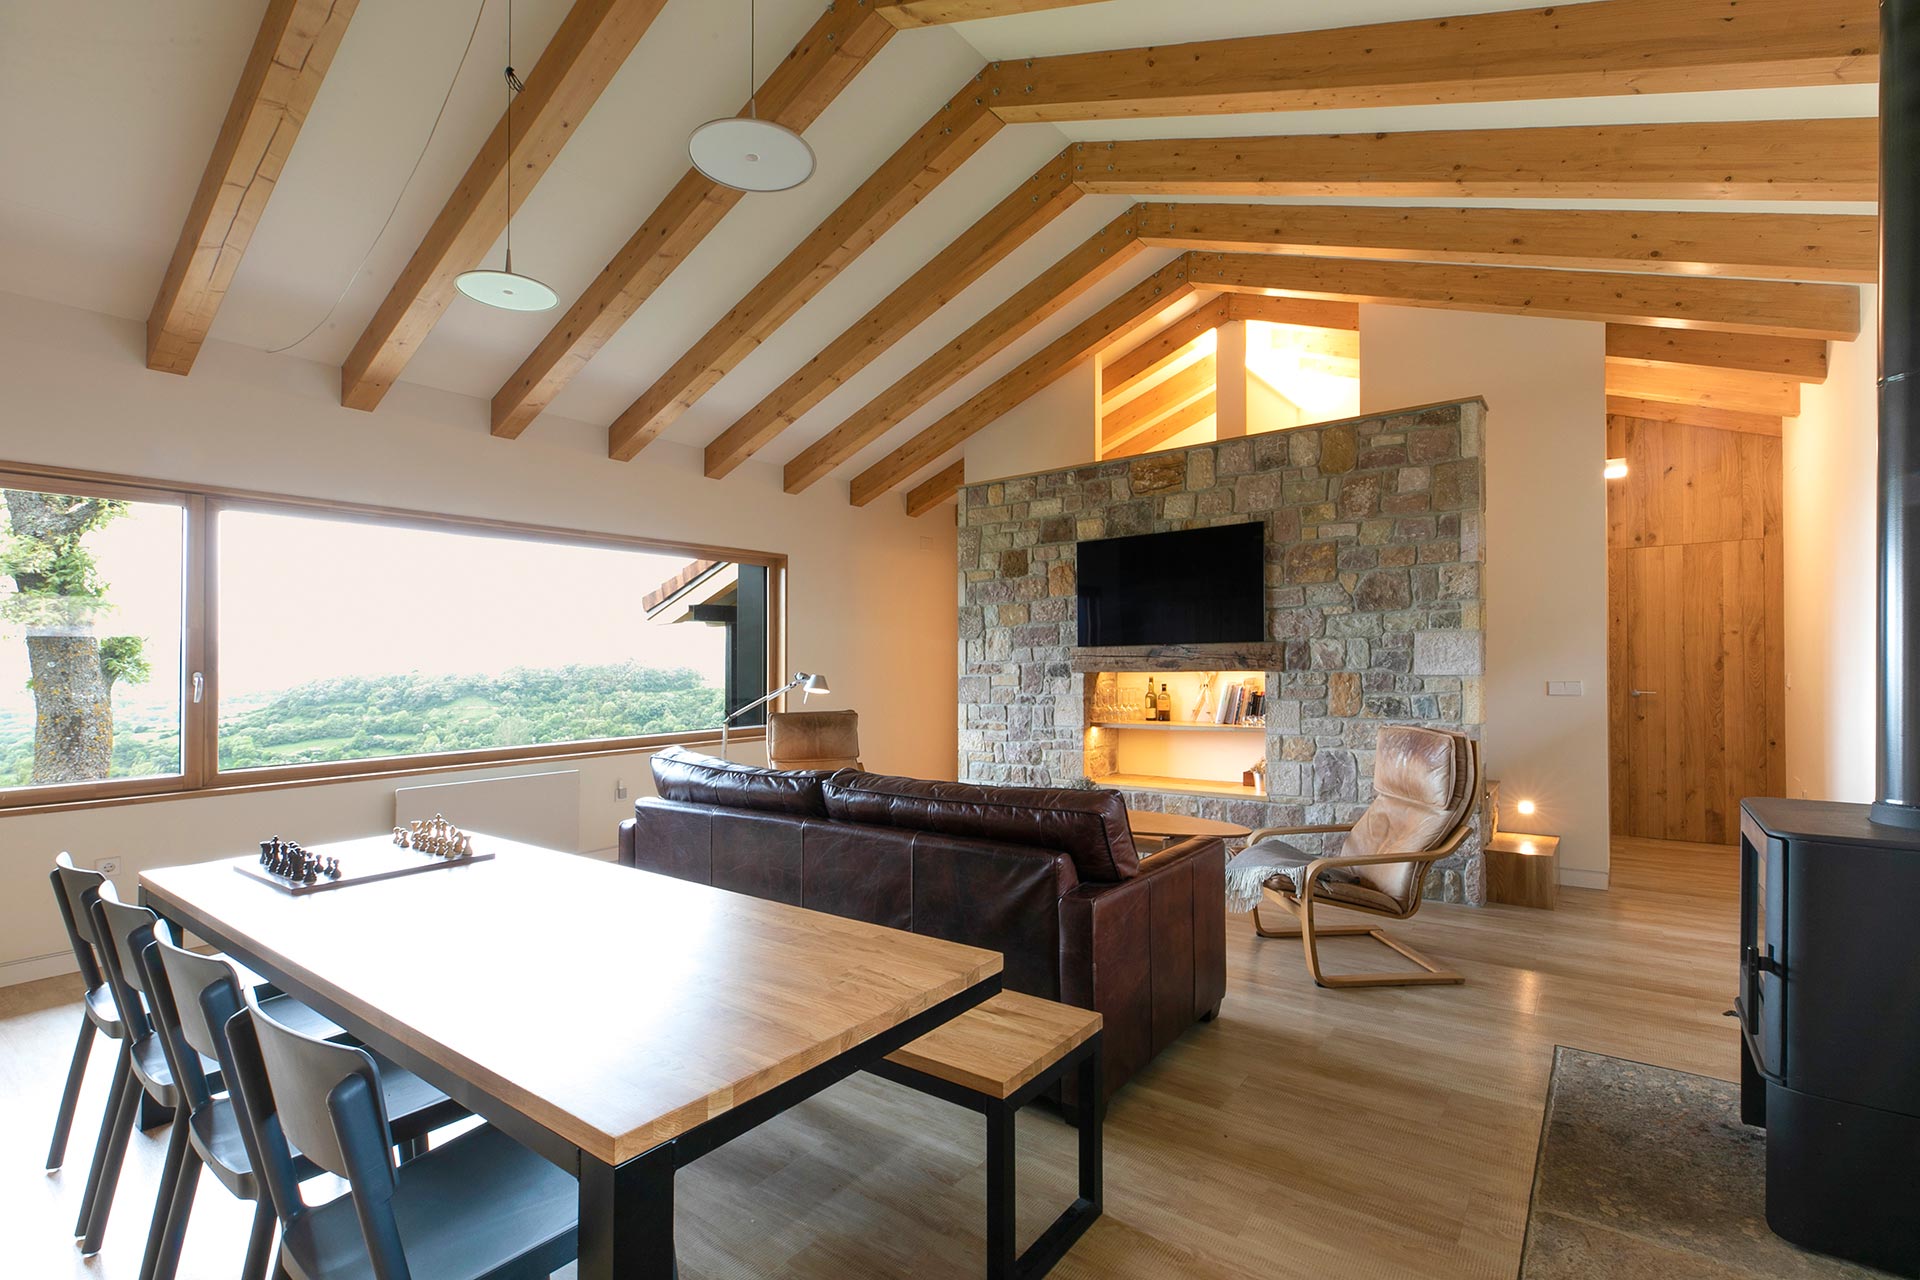 Salón de alojamiento rural moderno en Proaño diseñado por Moah Arquitectos en Cantabria